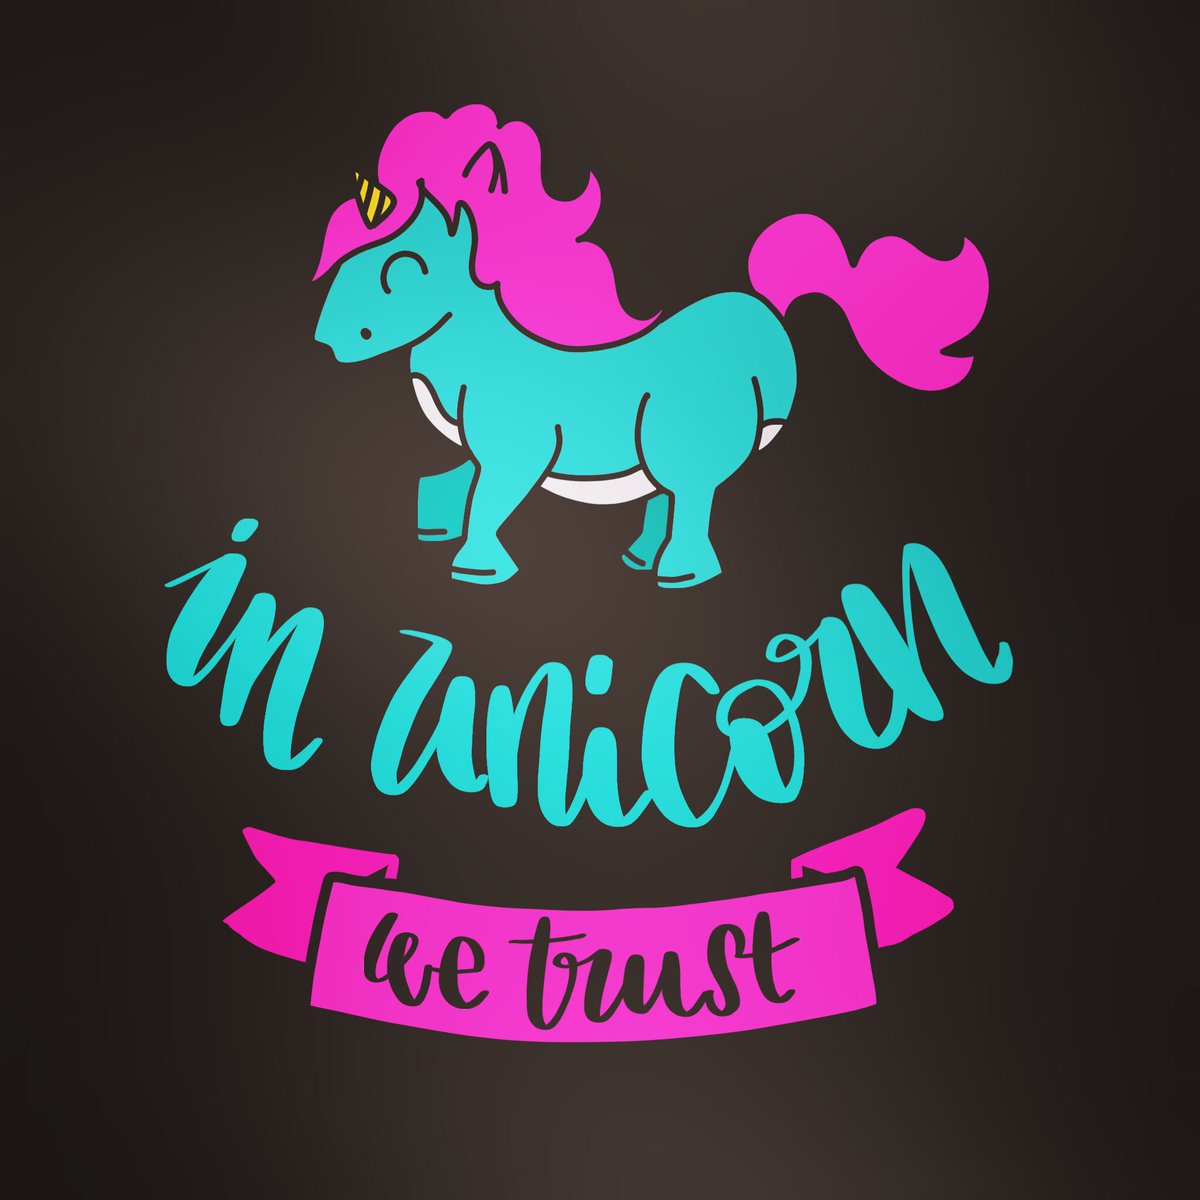 In unicorn we trust